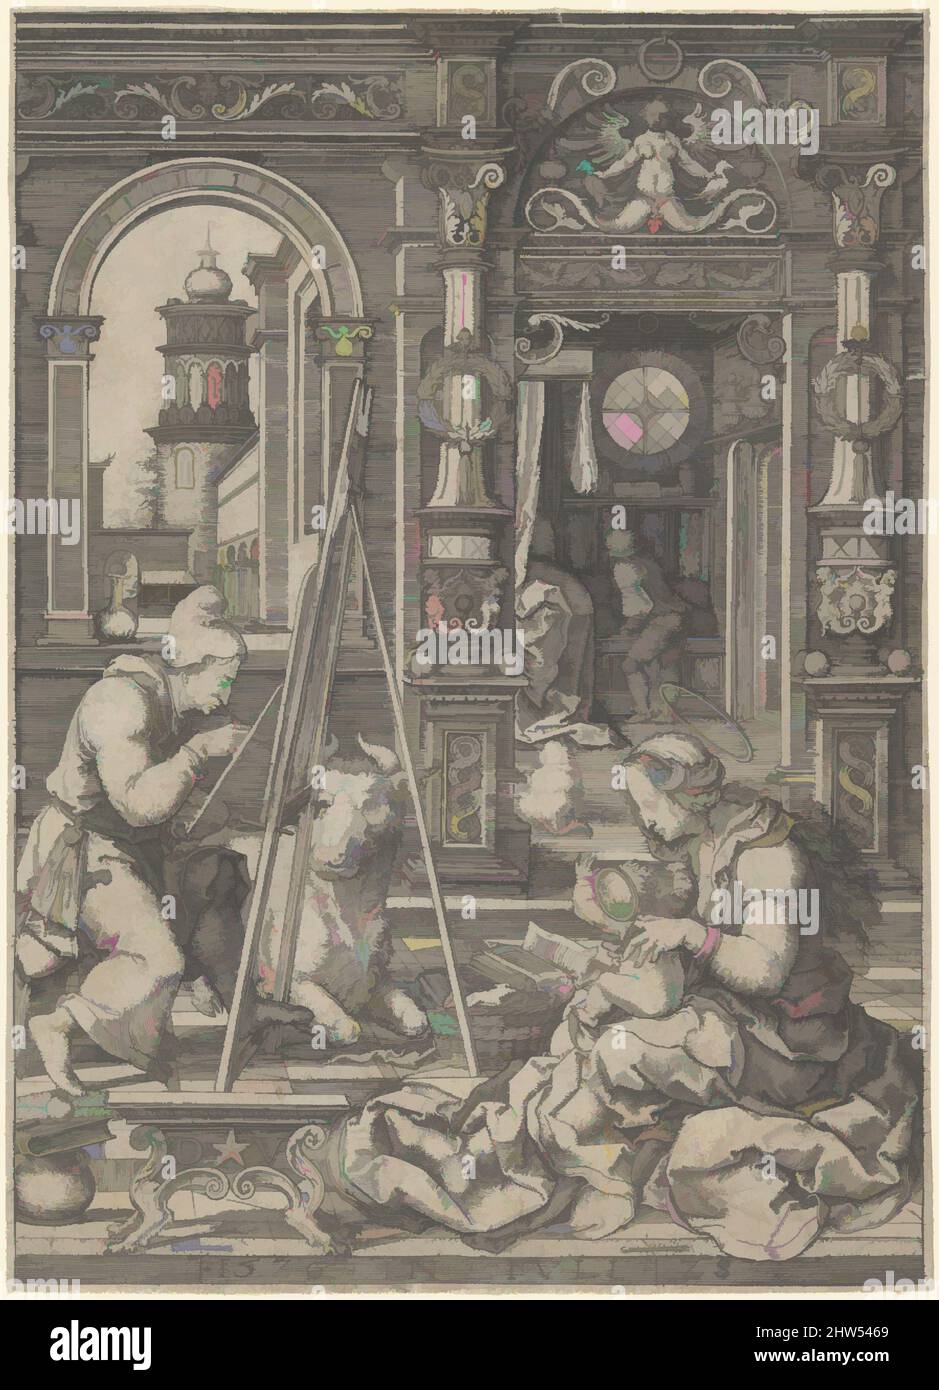 Art inspiré par Saint Luc peinture de la Vierge, 1526, gravure, feuille: 6 11/16 x 4 7/8 po. (17 x 12,4 cm), tirages, Dirck Vellert (pays-Bas, Amsterdam (?) env. 1480/85-ca. 1547), Vellert fit cette gravure de Saint Luc le 28 juillet 1526, l'année où il fut élu à son second mandat, oeuvres classiques modernisées par Artotop avec un peu de modernité. Formes, couleur et valeur, impact visuel accrocheur sur l'art émotions par la liberté d'œuvres d'art d'une manière contemporaine. Un message intemporel qui cherche une nouvelle direction créative. Artistes qui se tournent vers le support numérique et créent le NFT Artotop Banque D'Images